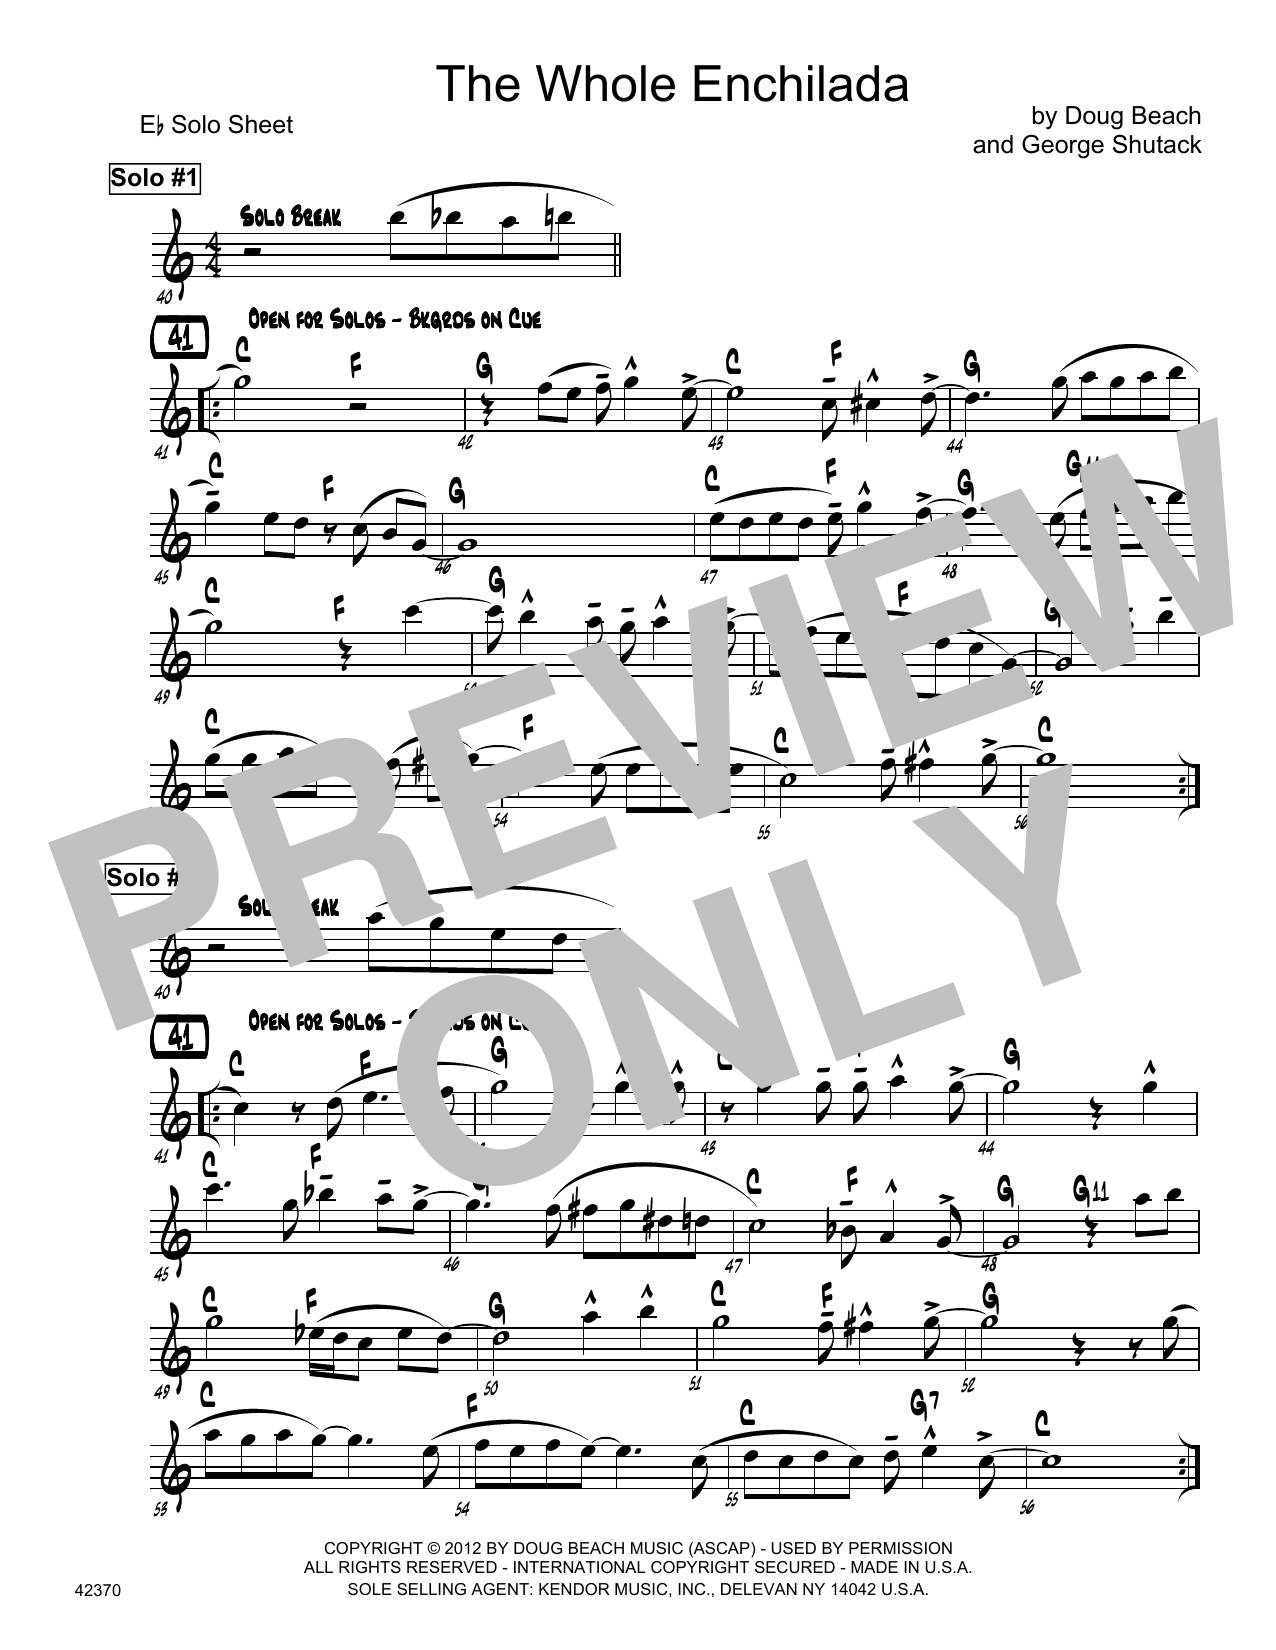 Download Doug Beach & George Shutack The Whole Enchilada - Bb Solo Sheet Sheet Music